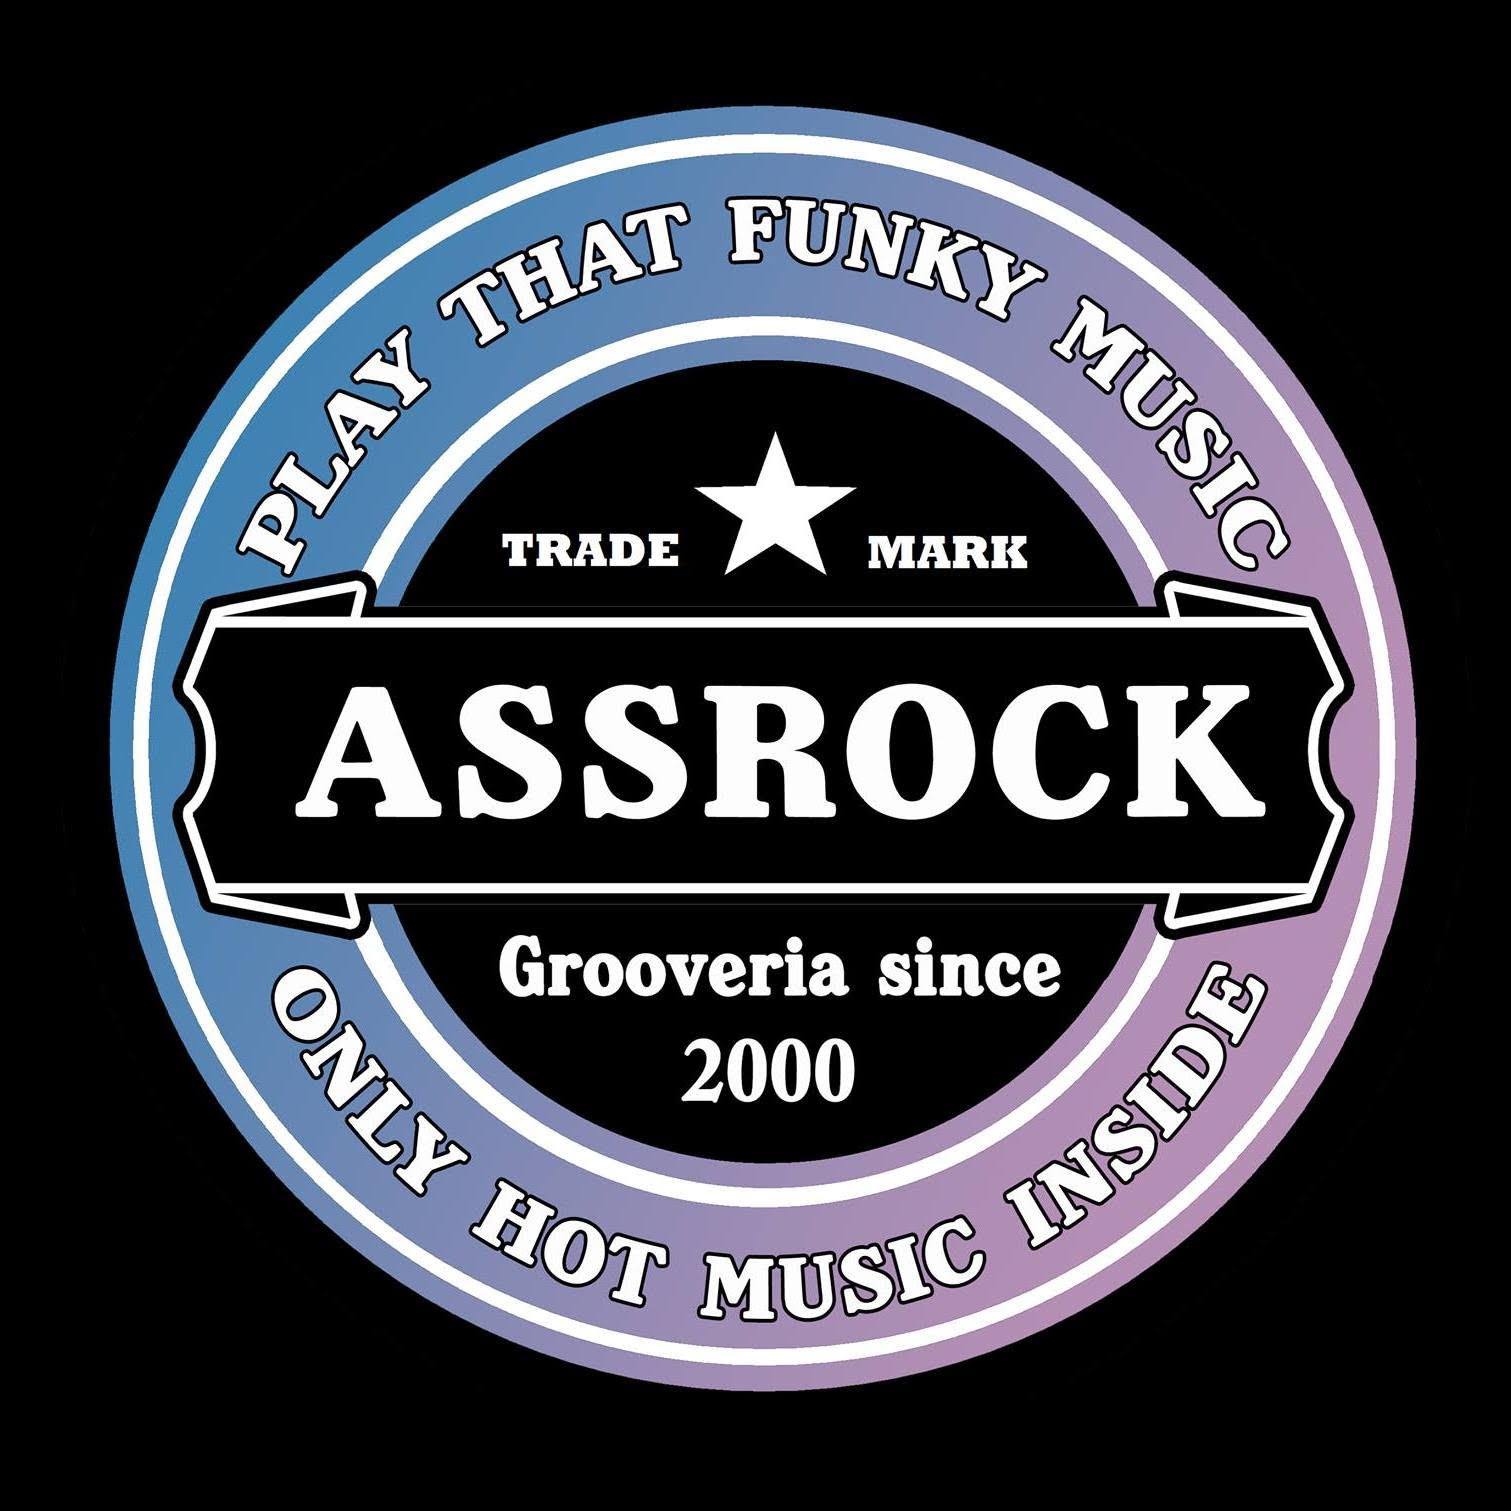 Assrock